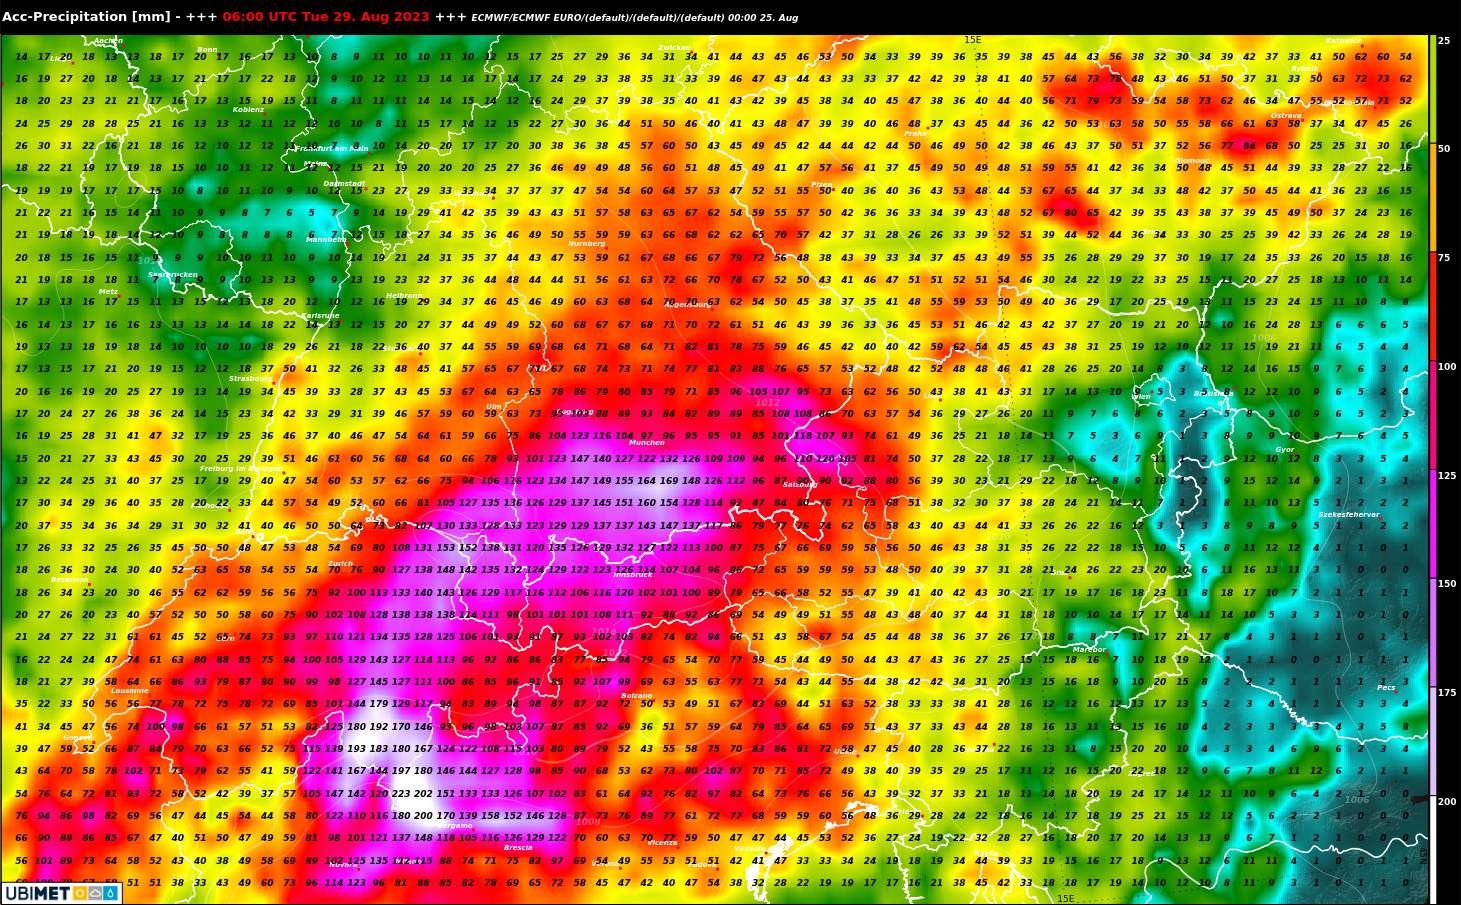 Abb. 6: Regensumme bis Dienstag nach dem europäischen Wettermodell ECMWF; Quelle: MeteoNews, UBIMET